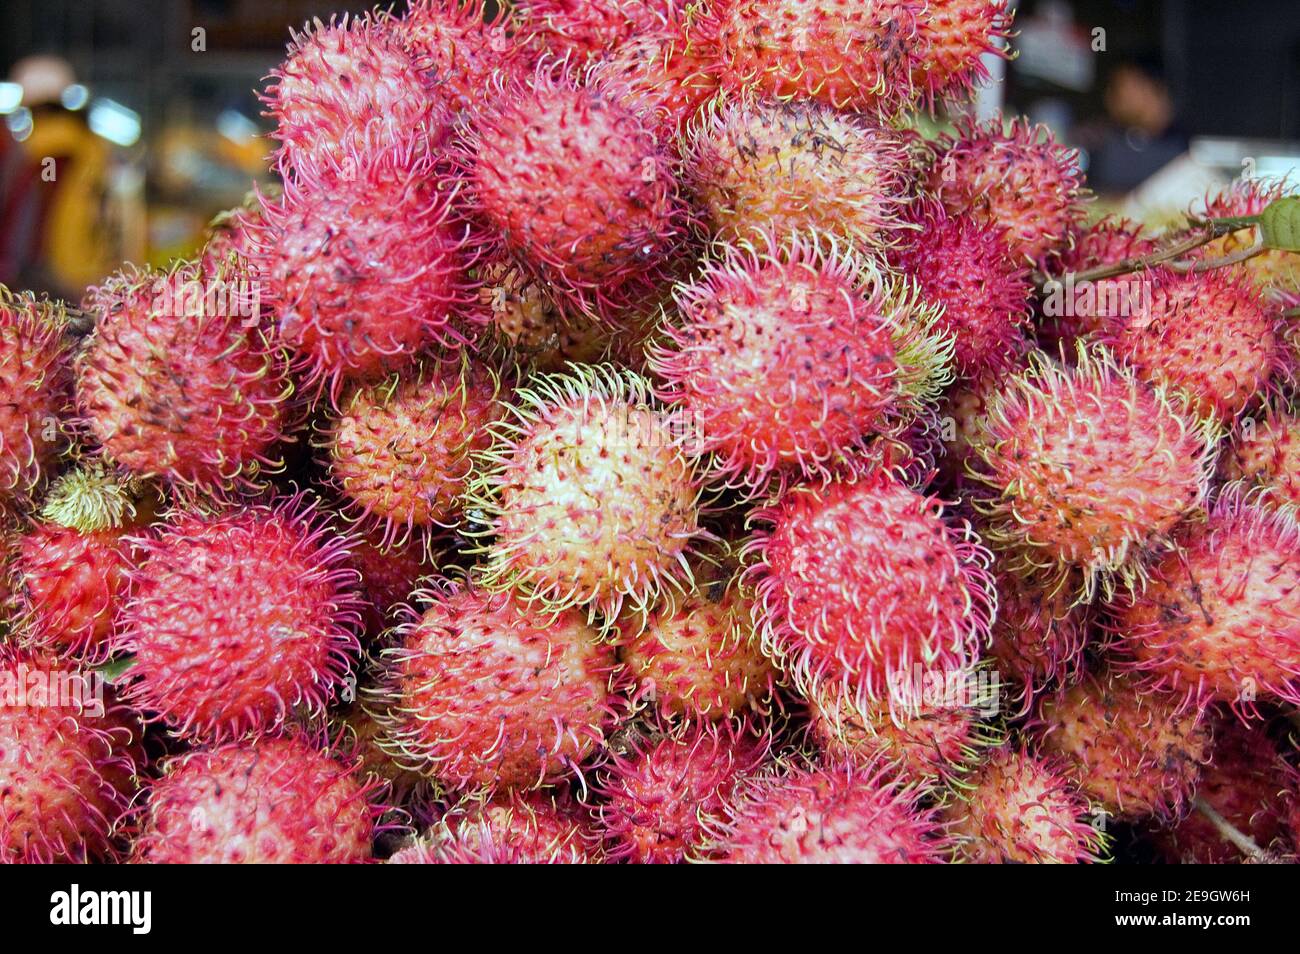 A heap of ripe rambutan fruit - latin name nephelium lappaceum - on a market stall in Cambodia. Stock Photo